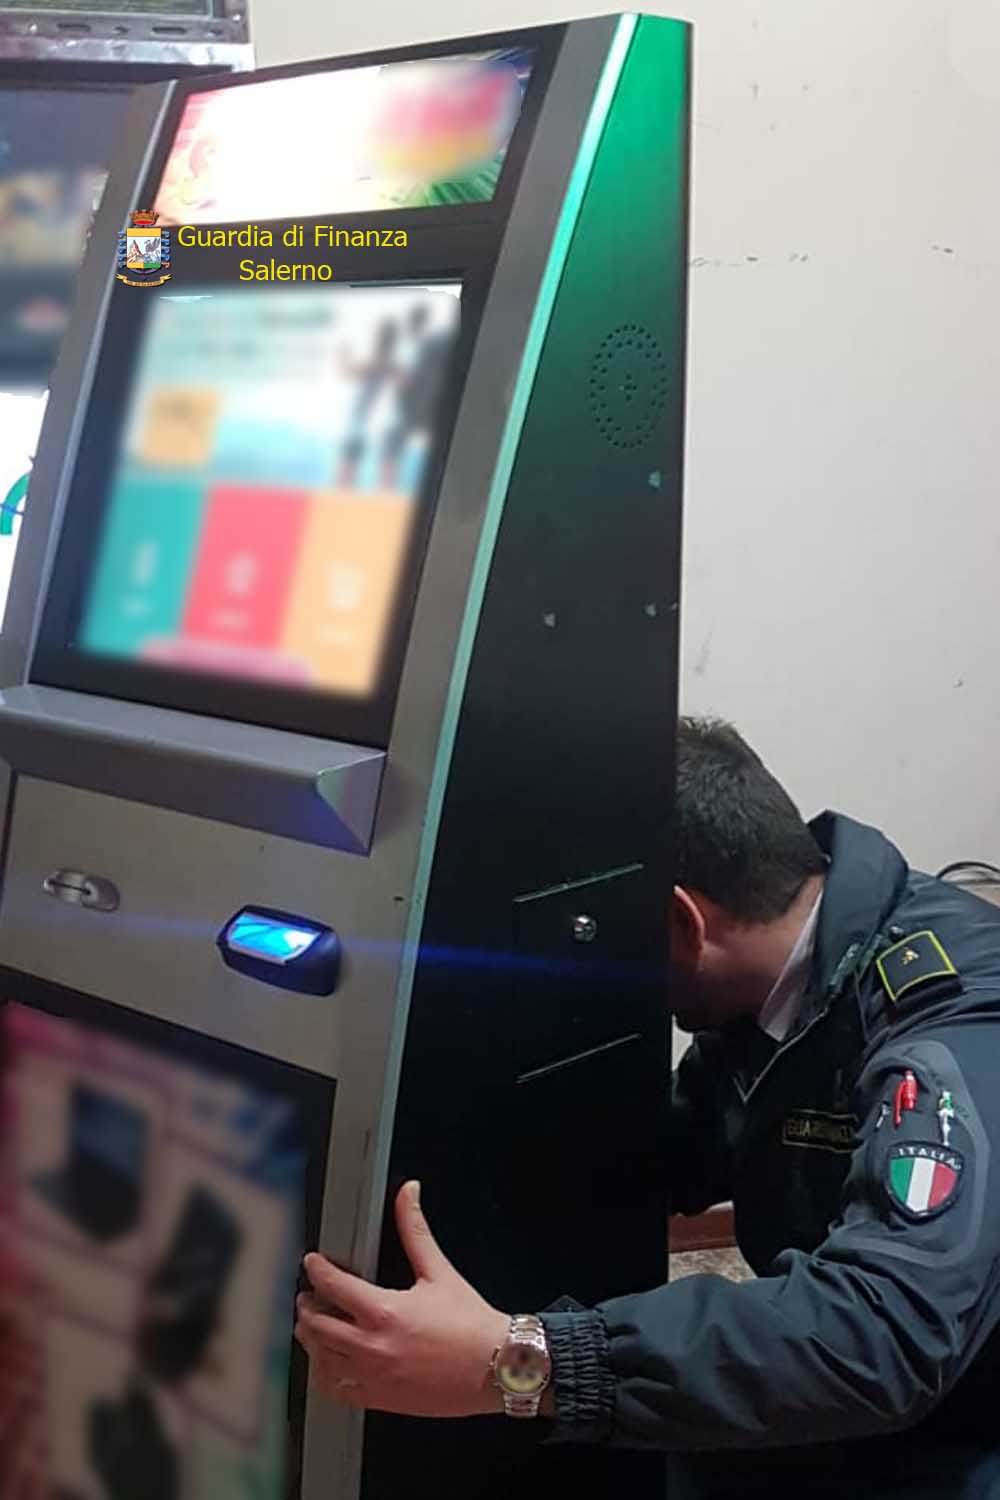  Slot Machine non collegata al sistema nazionale: sanzionato un esercizio pubblico del Vallo di Diano